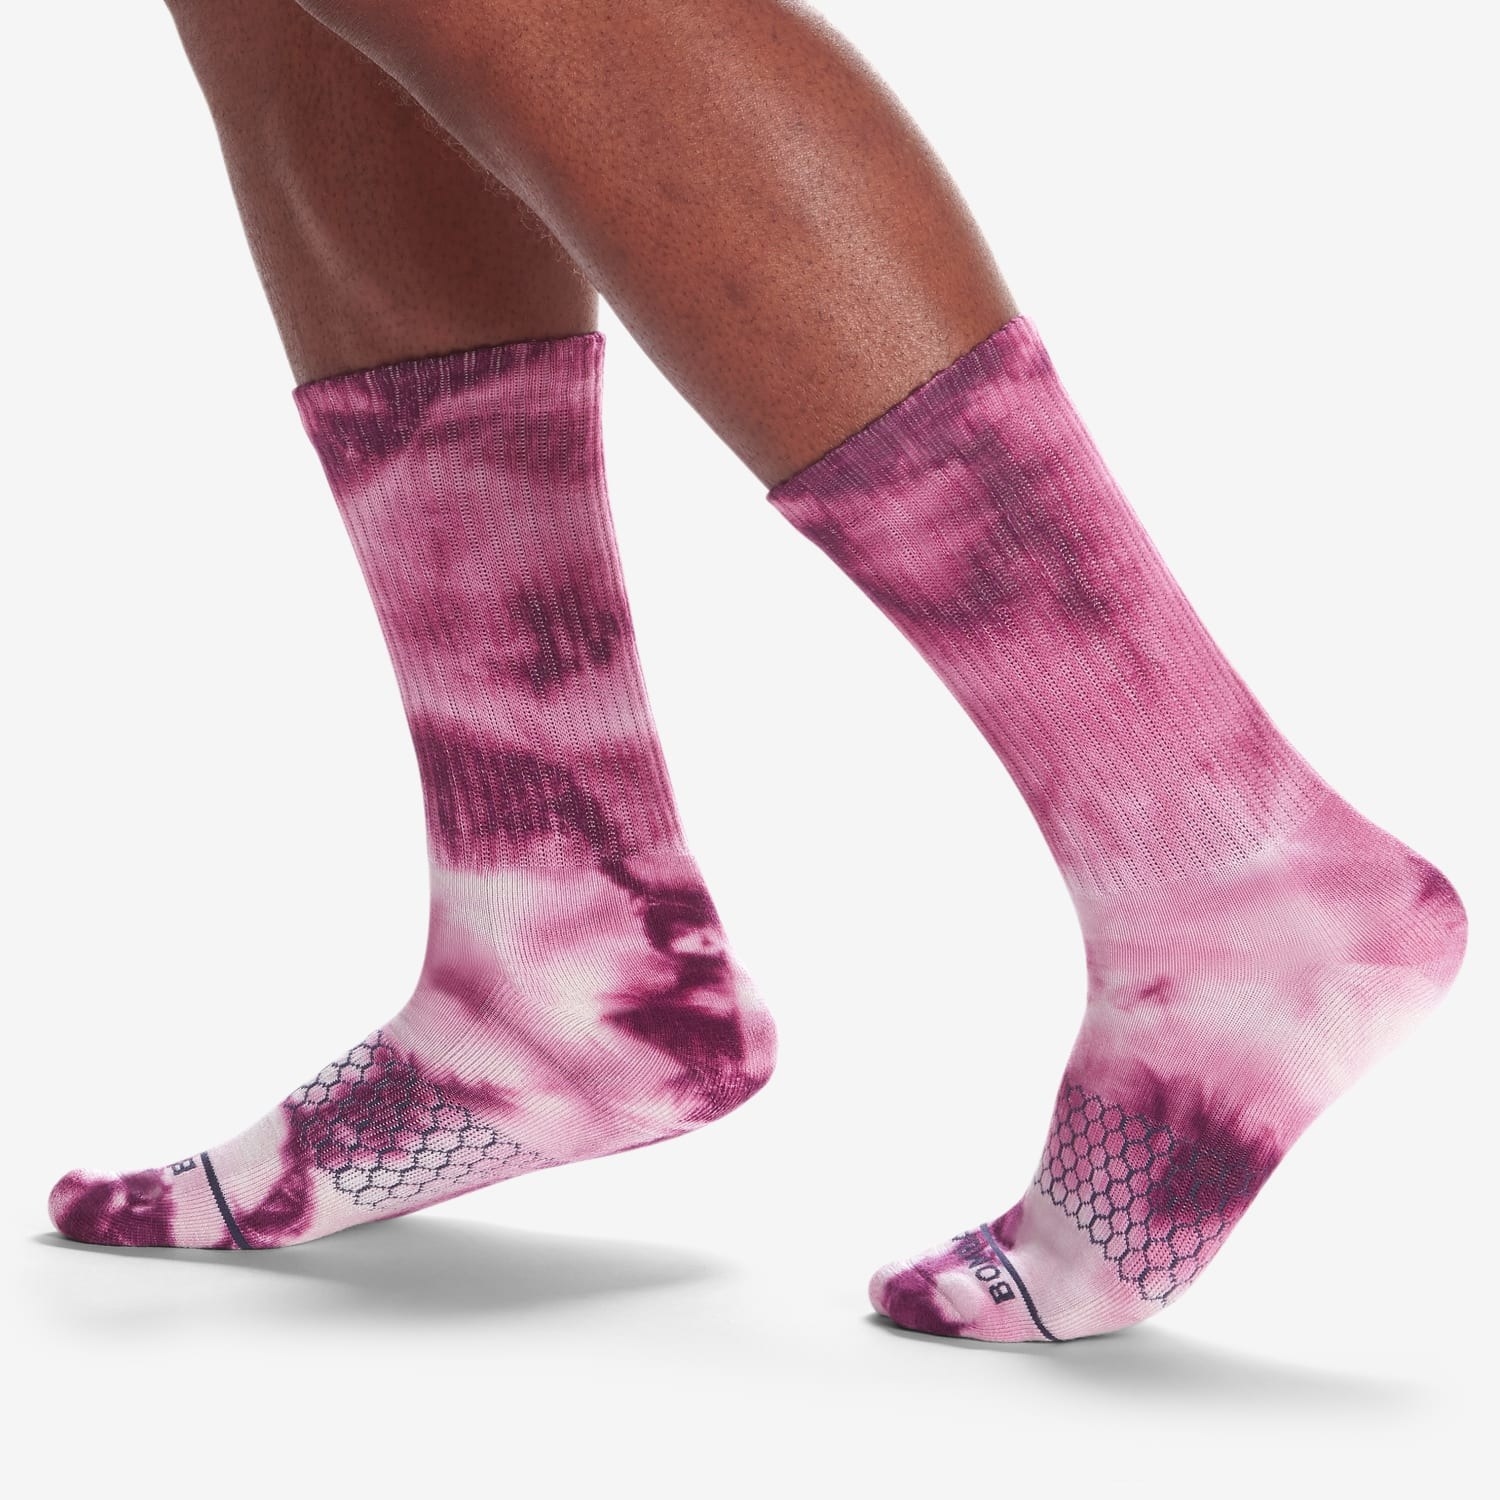 a model wearing pink tye dye socks 